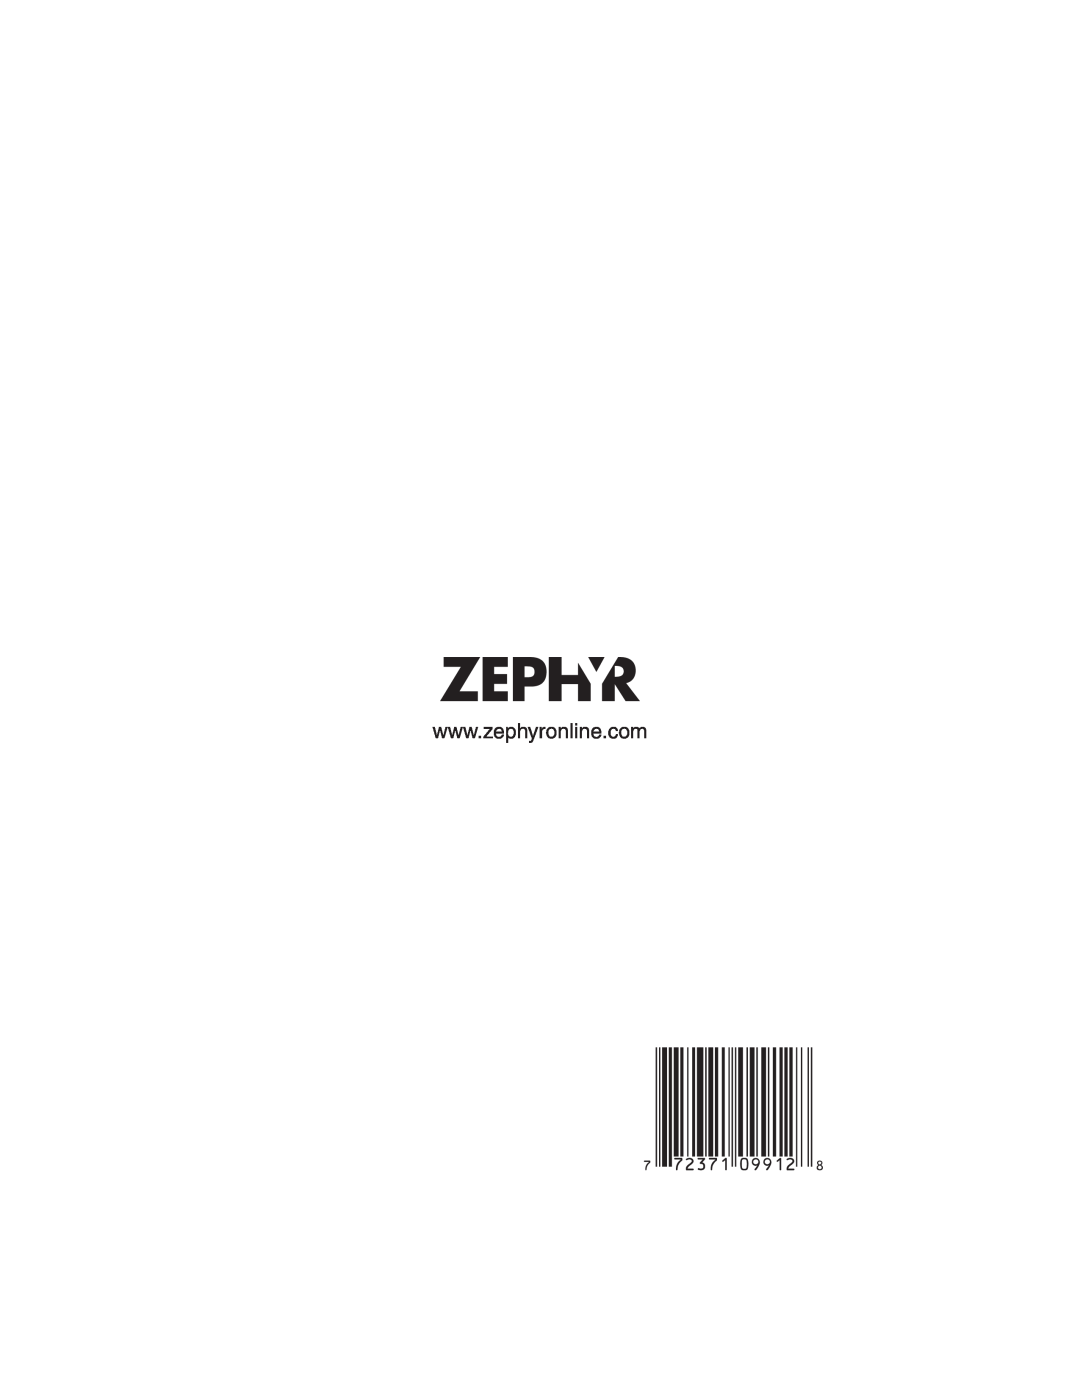 Zephyr ES1-E30AS, ES1-30AW, ES1-E30AB installation instructions 